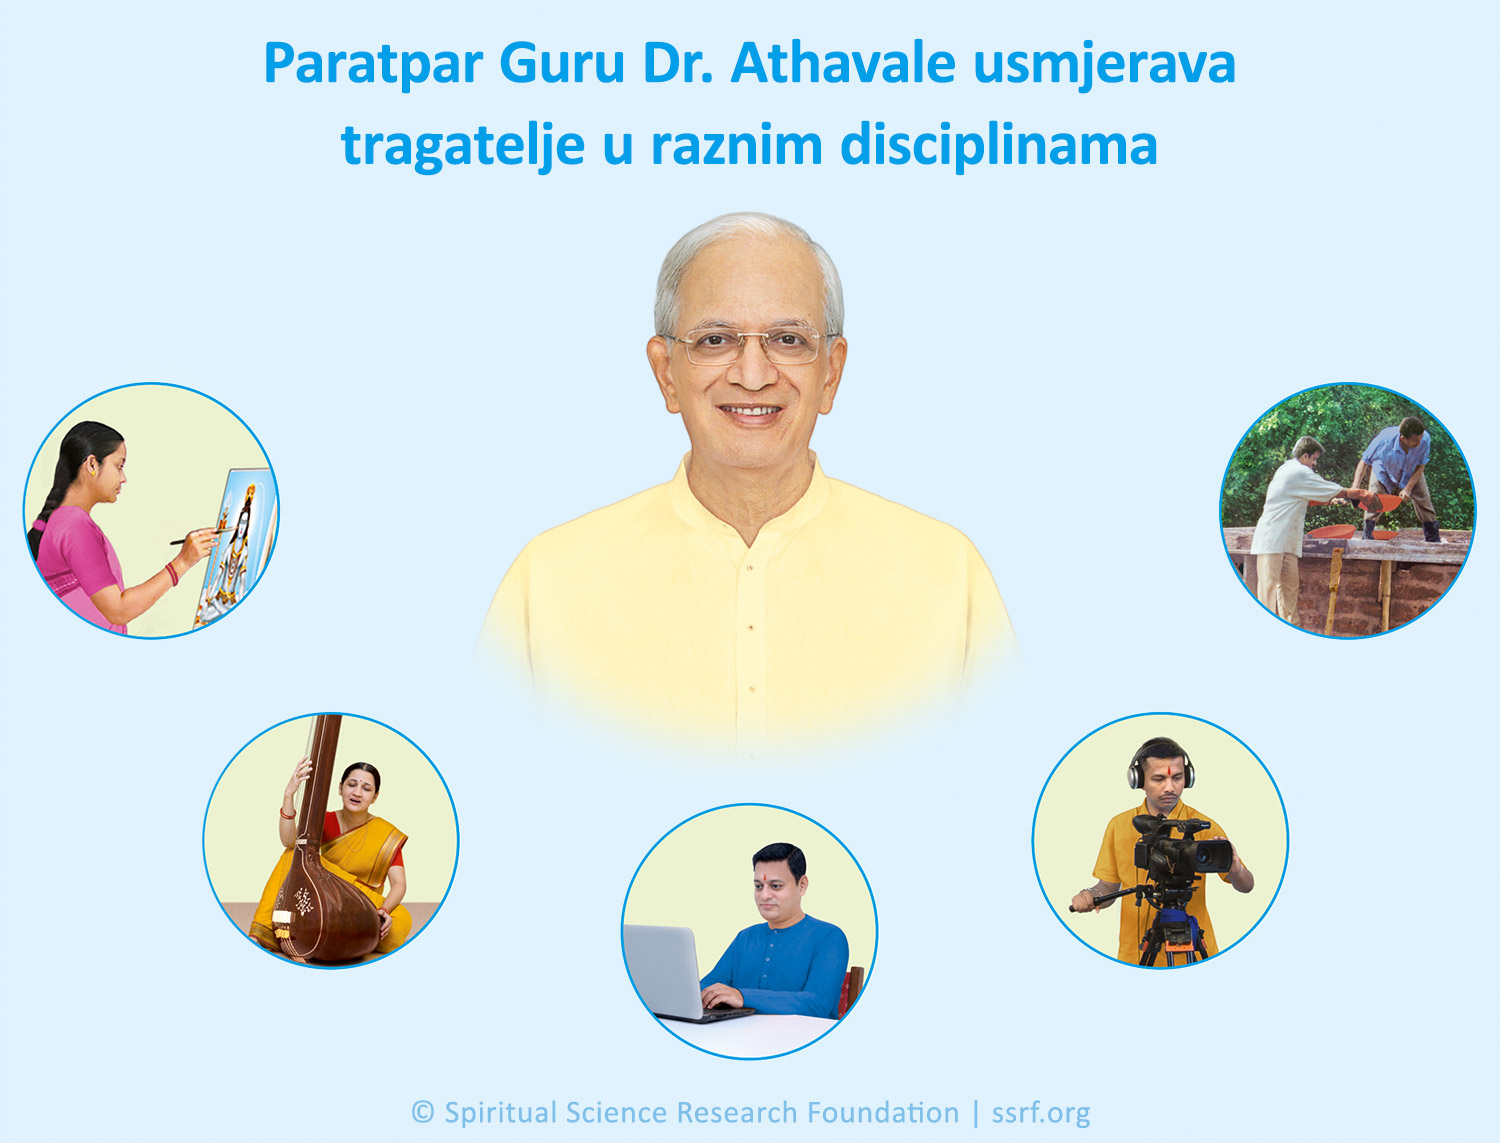 Bezuvjetna ljubav Paratpar Gurua Dr. Jayanta Balajia Athavalea prema čovječanstvu - prvi dio